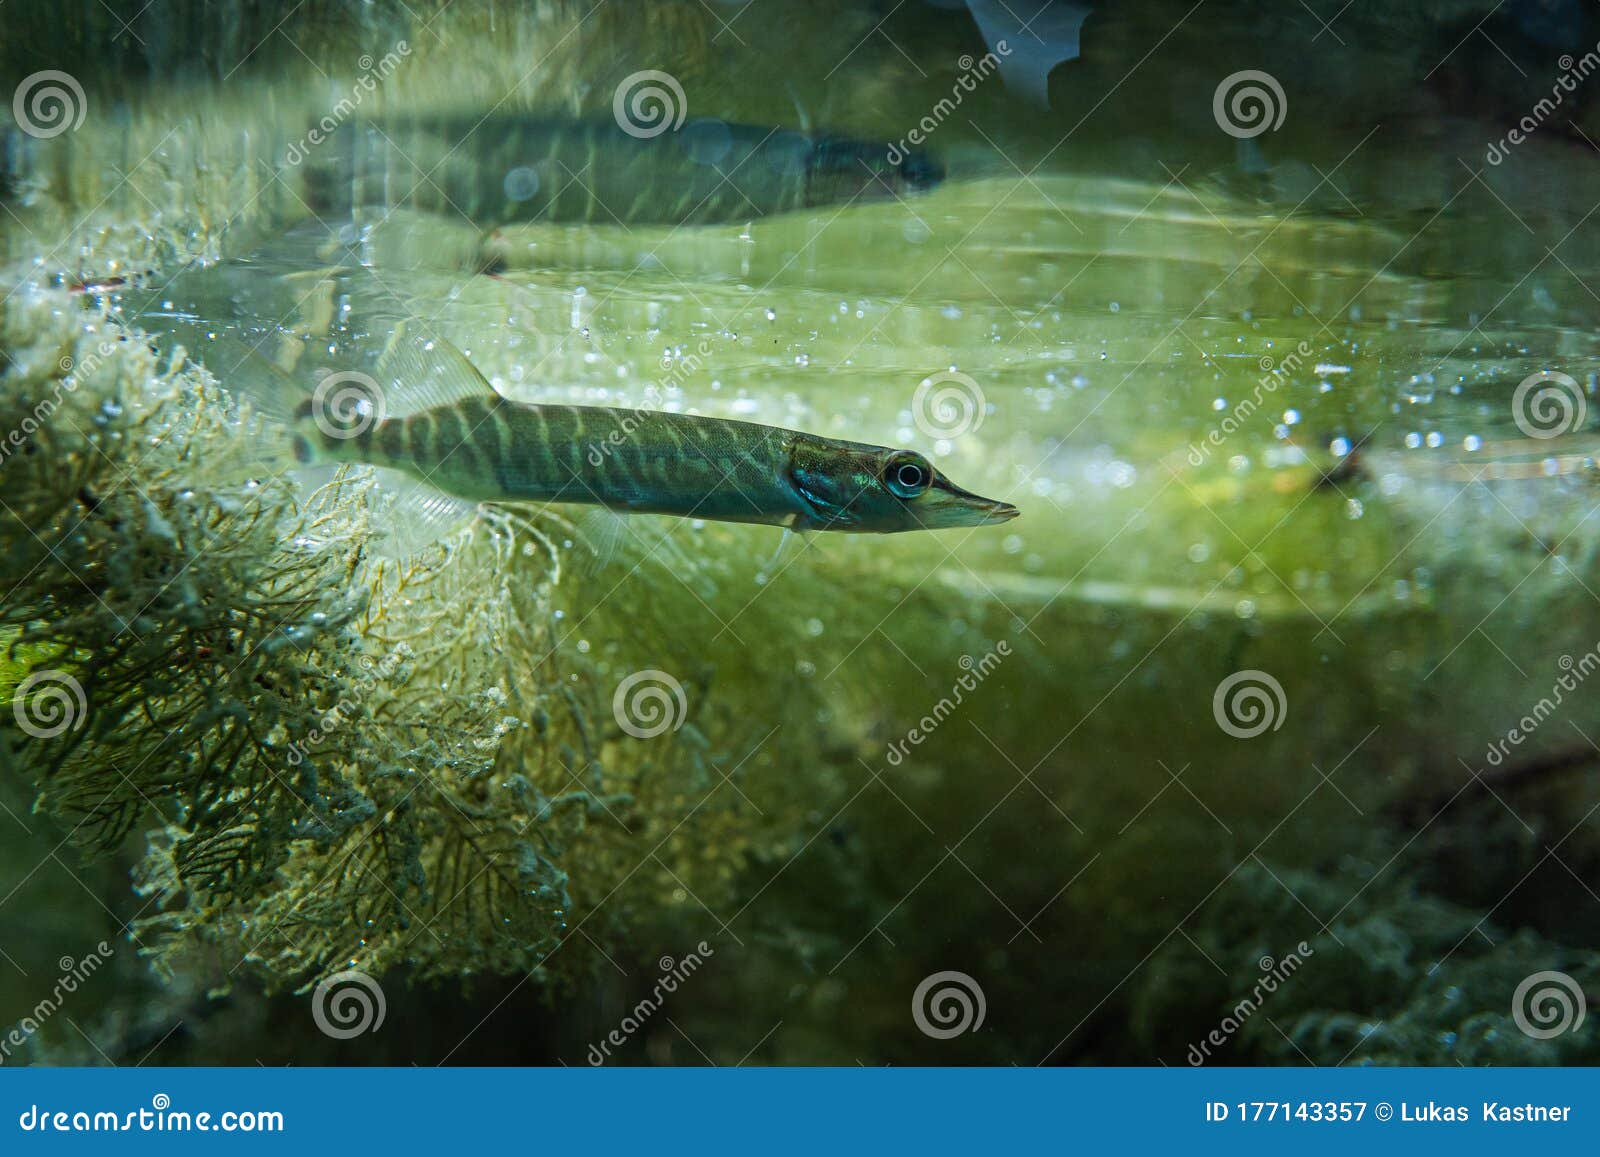 150 Underwater Muskie Stock Photos - Free & Royalty-Free Stock